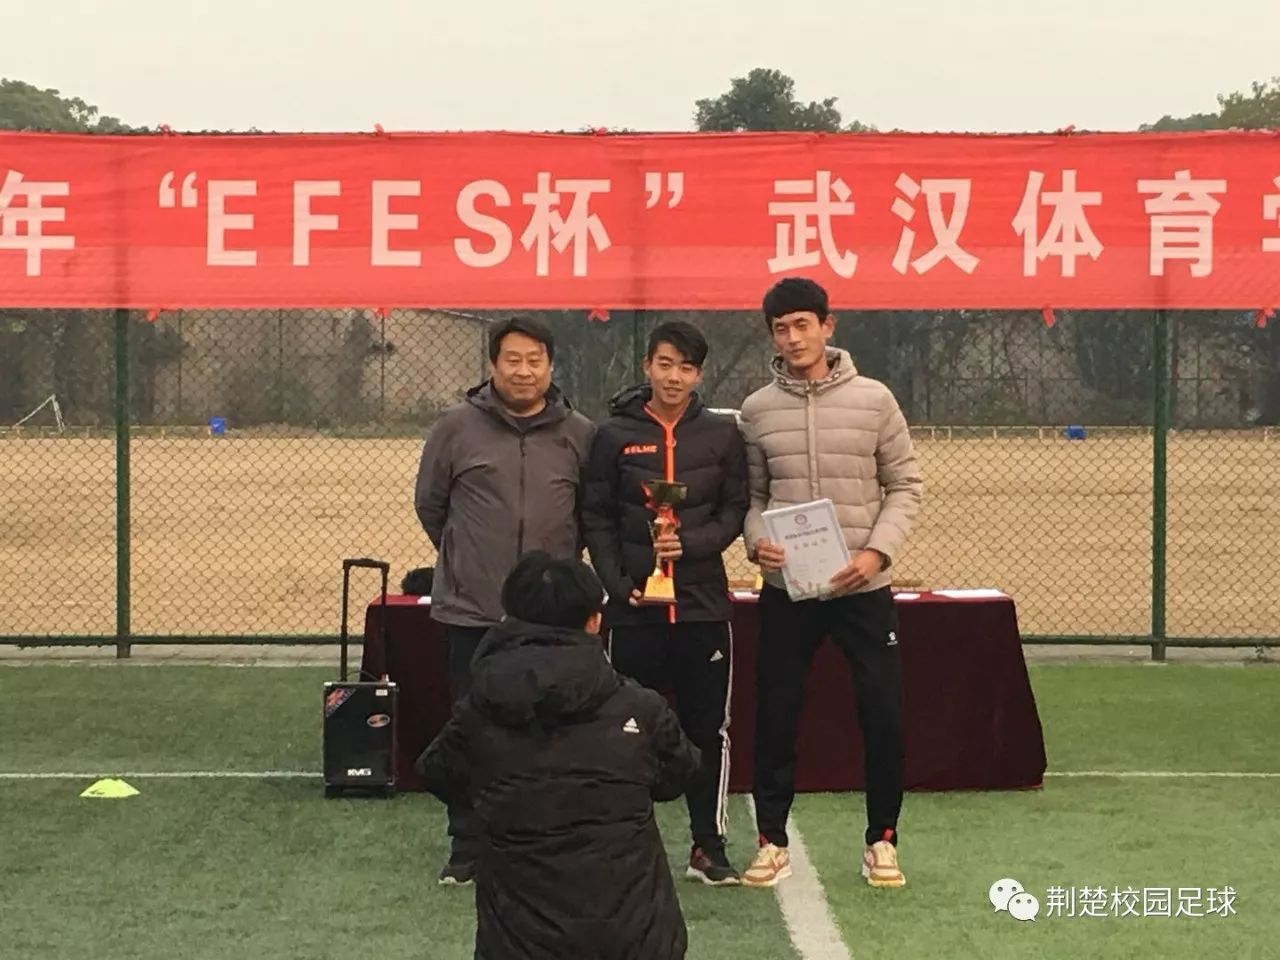 2017年efes杯武汉体育学院足球联赛圆满落幕